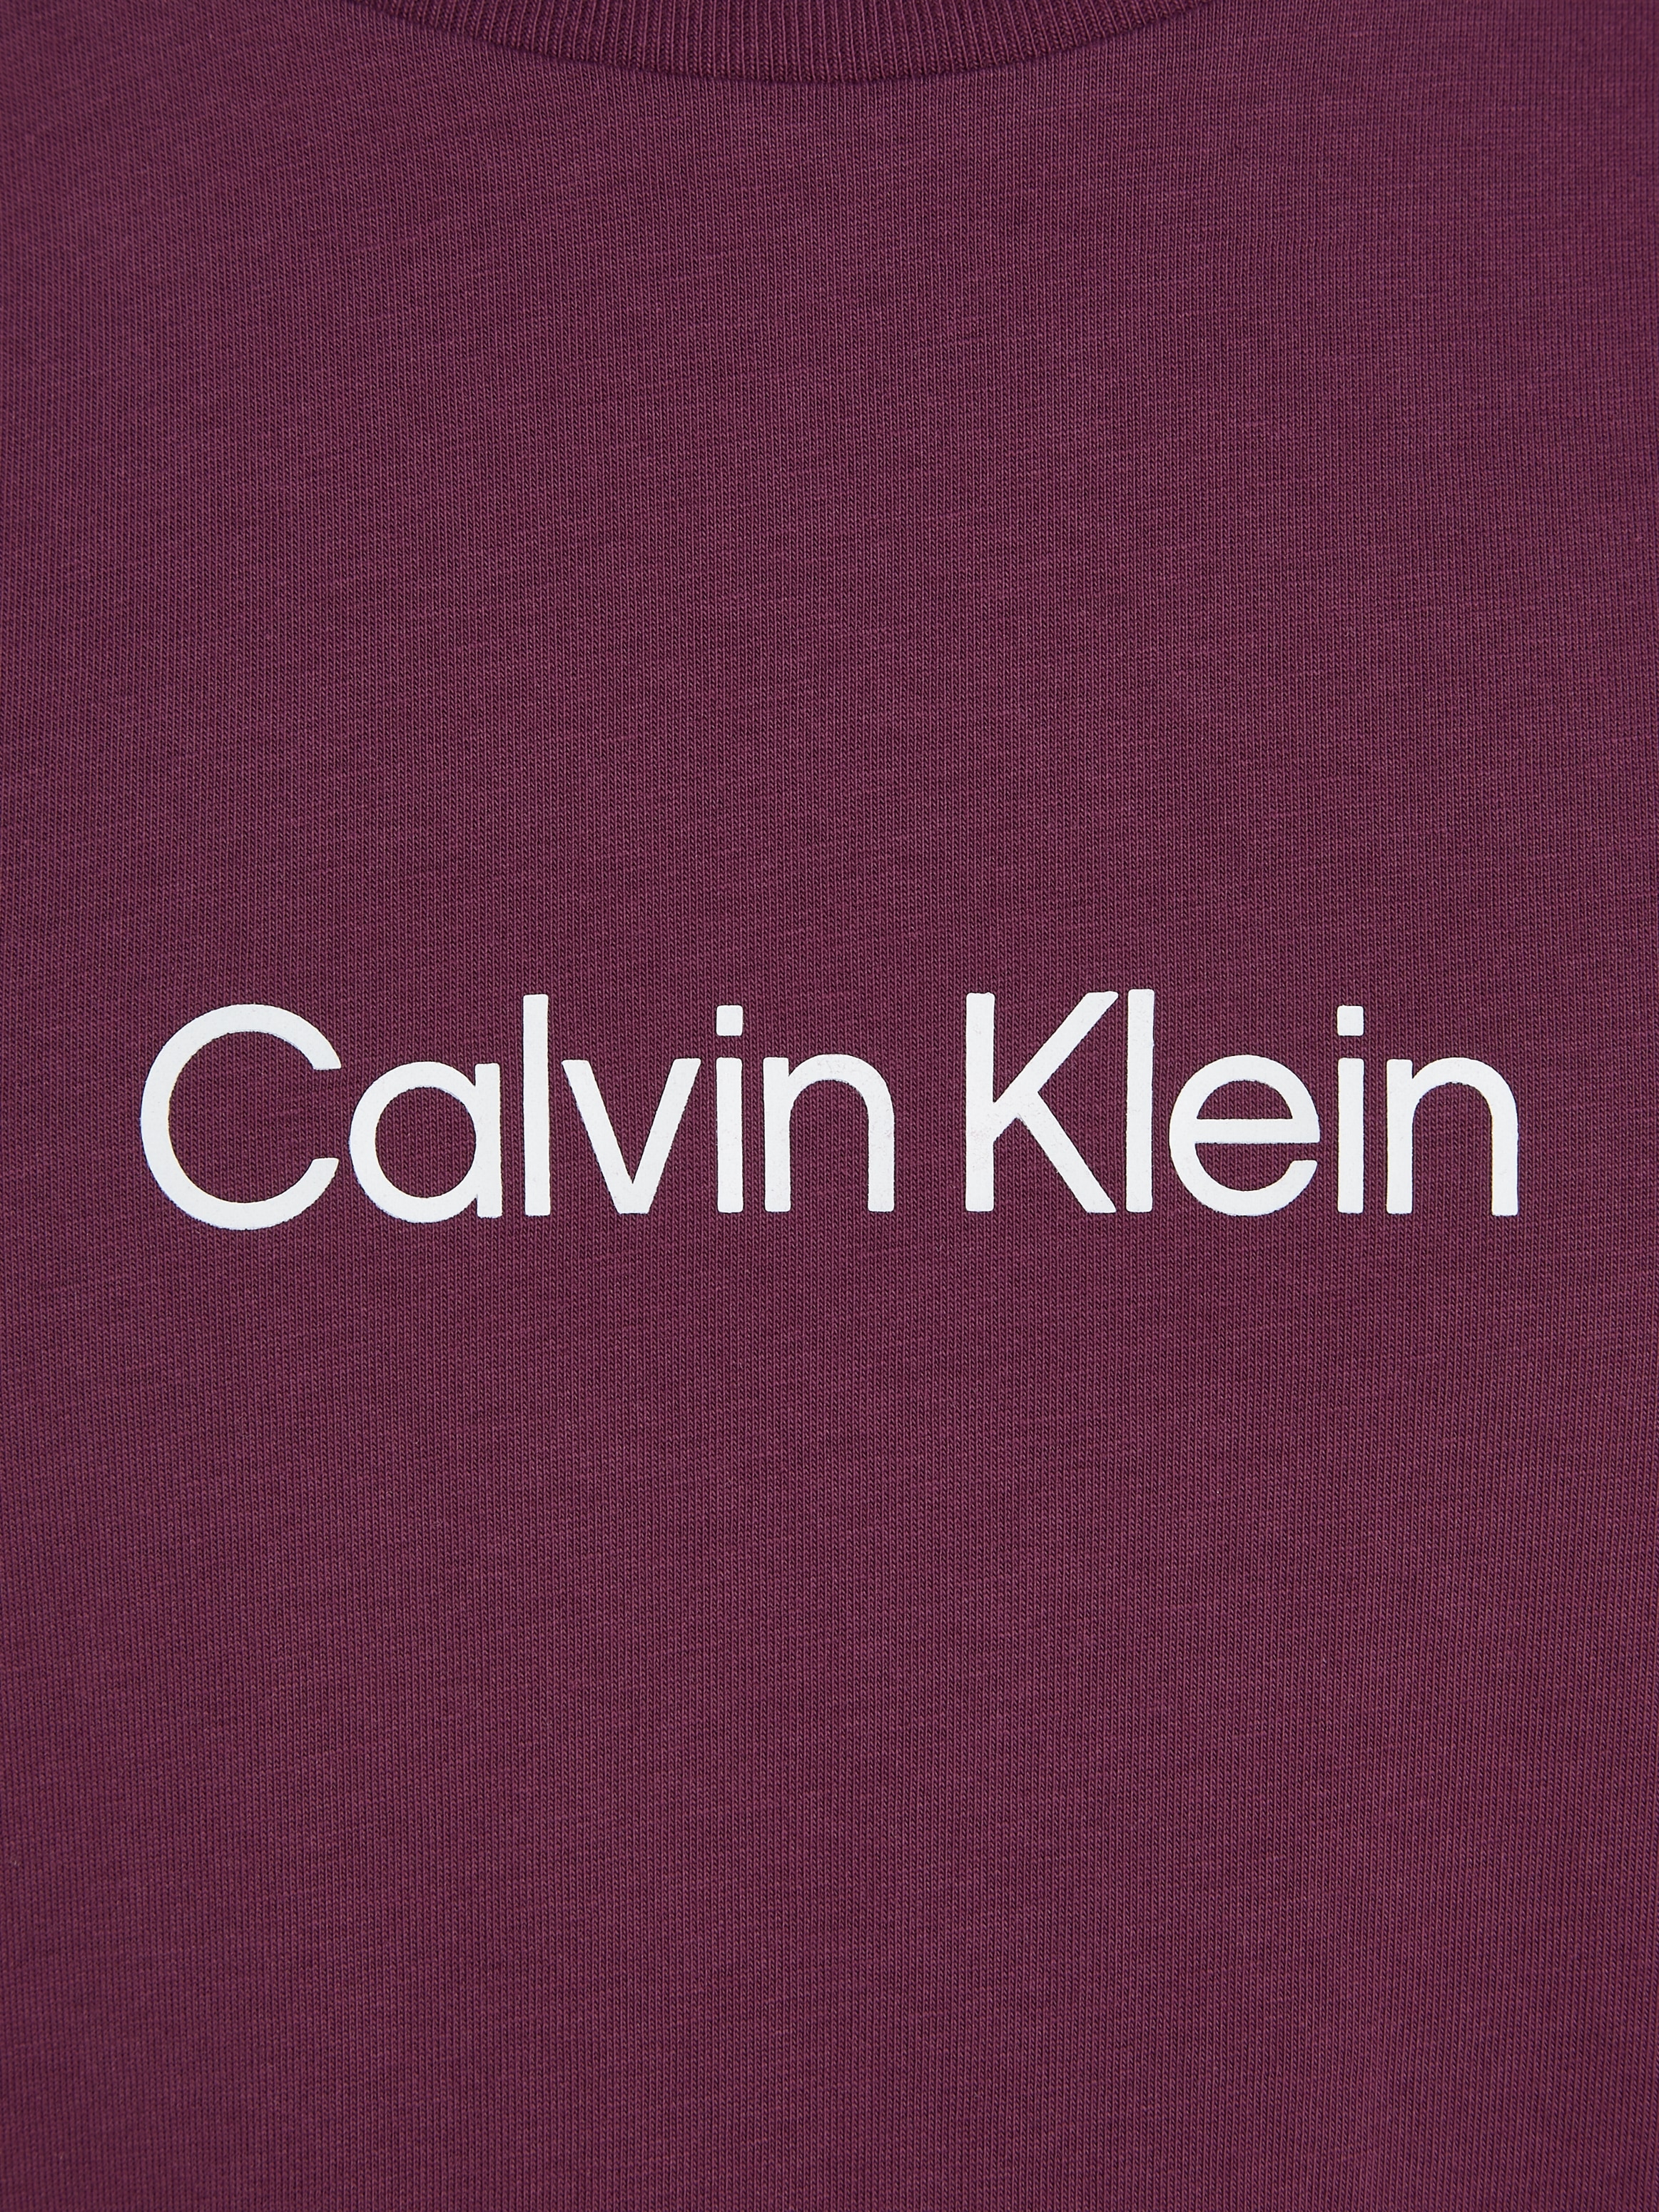 Calvin Klein bei »HERO aufgedrucktem LOGO T-SHIRT«, ♕ Markenlabel T-Shirt mit COMFORT